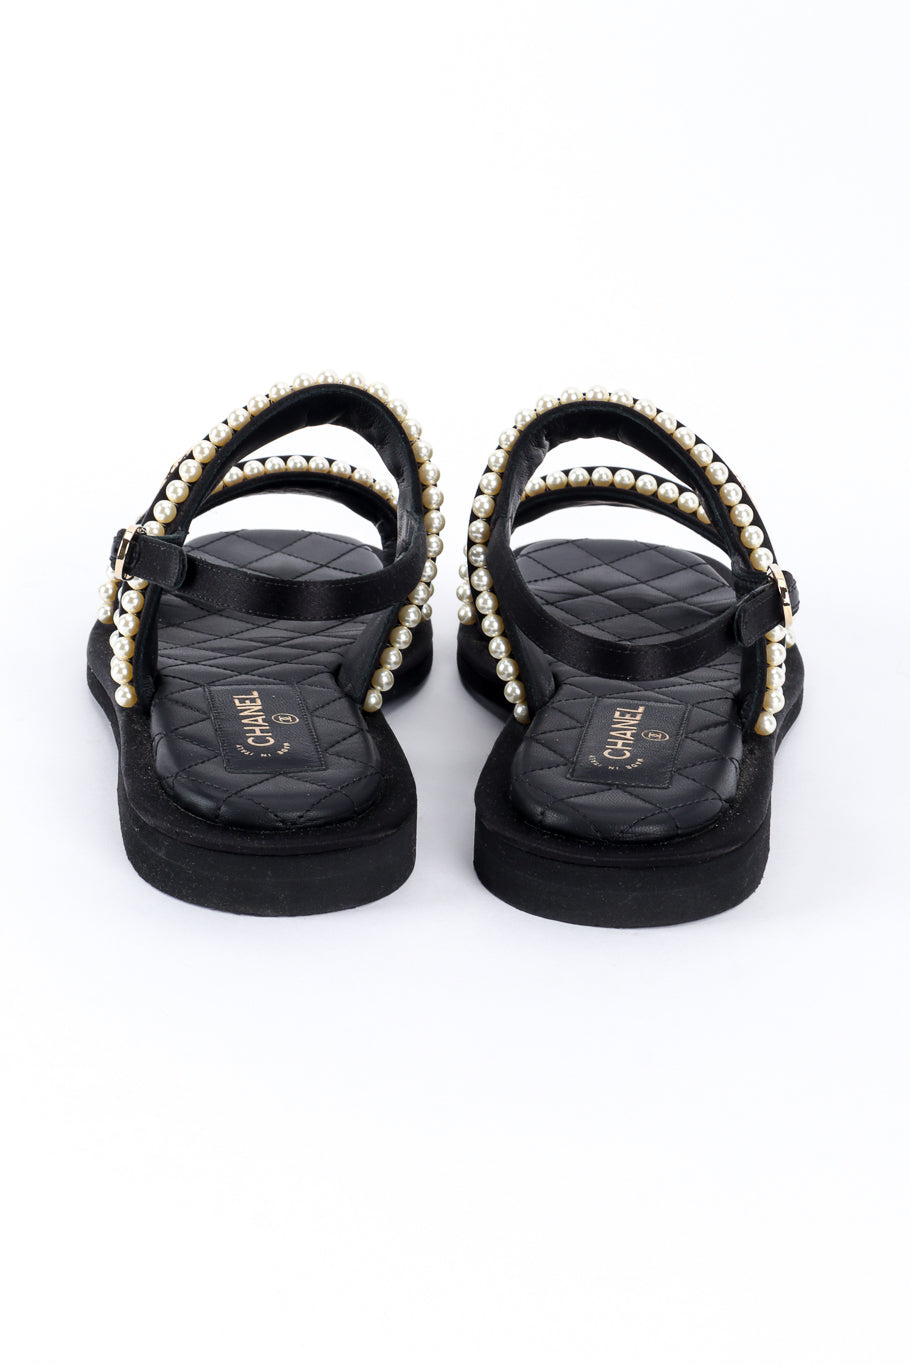 Chanel CC Satin & Pearl Sandals back @recess la